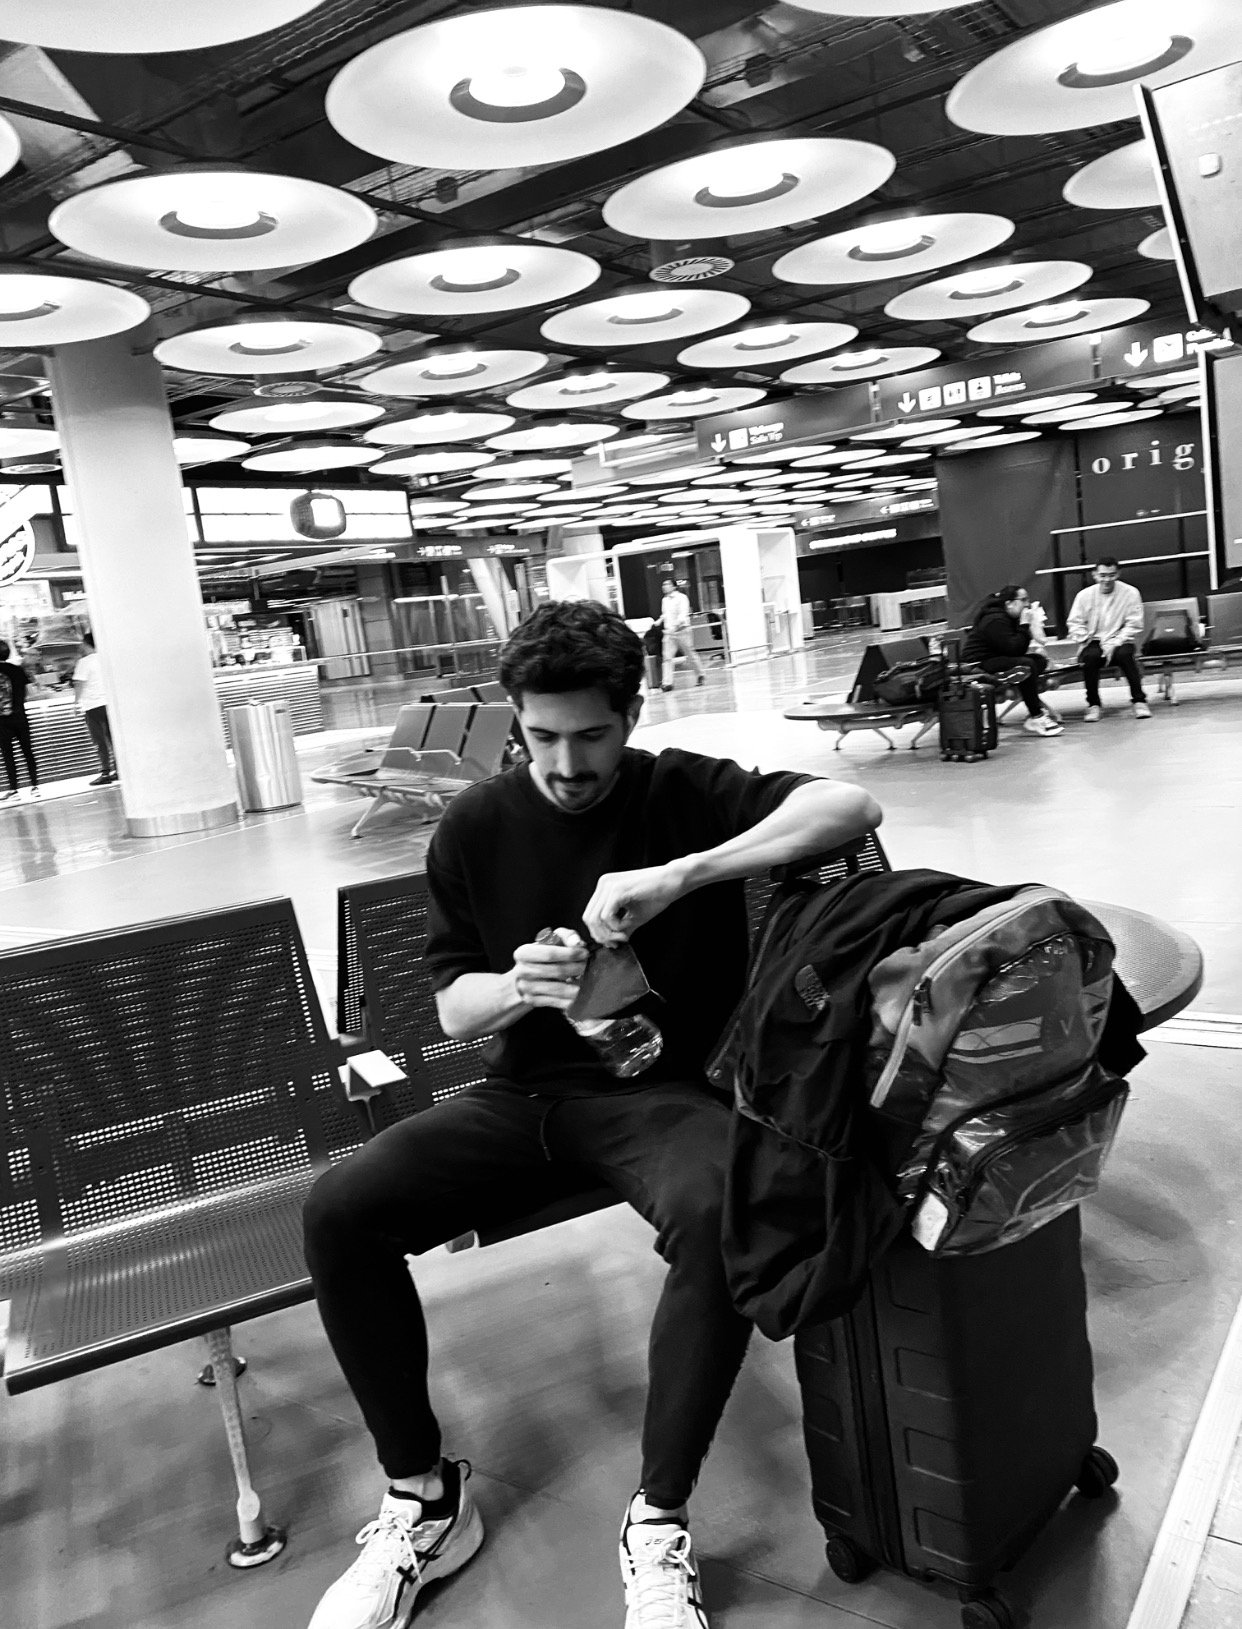 Foto a blanco y negro de un hombre en un aeropuerto recostado contra su equipaje de mano 